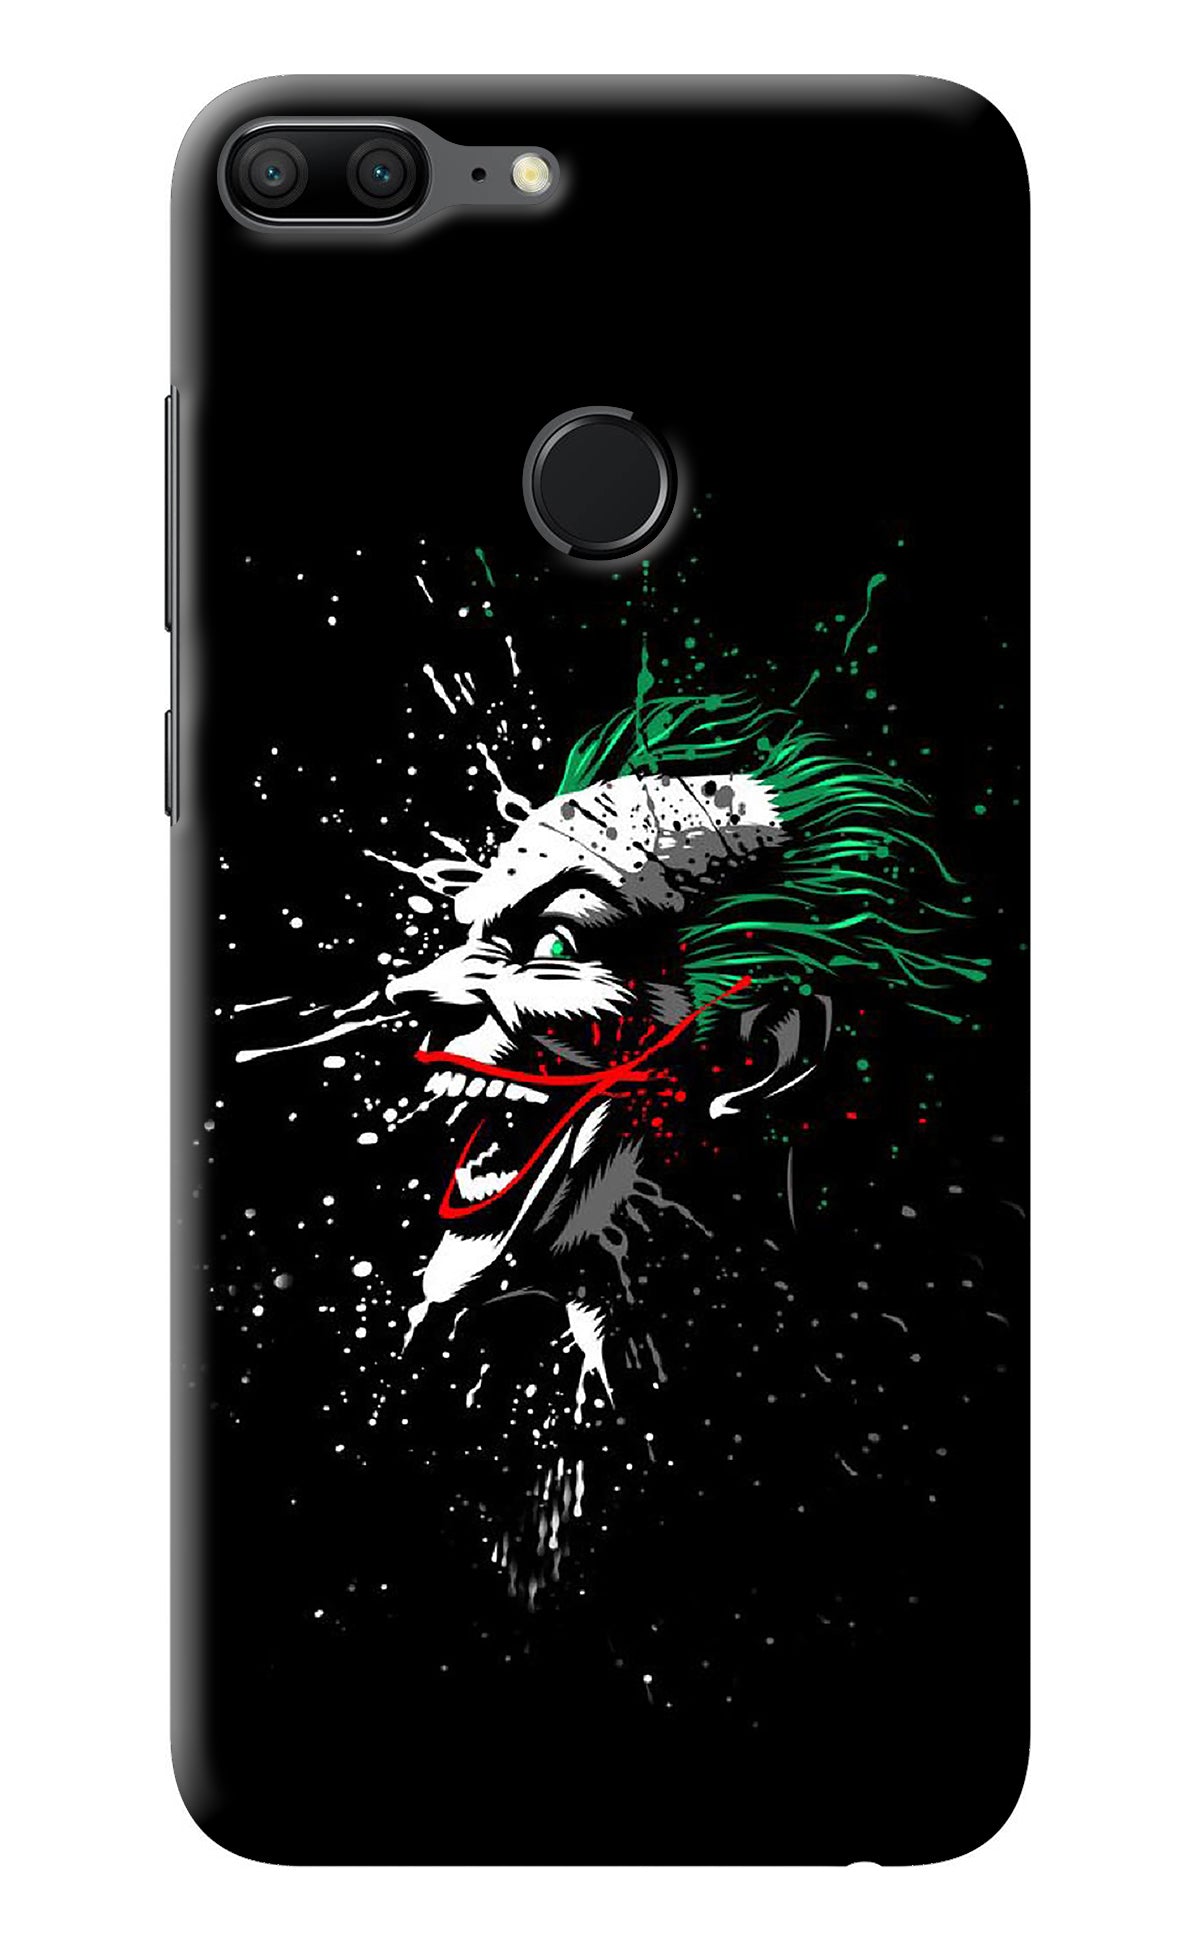 Joker Honor 9 Lite Back Cover